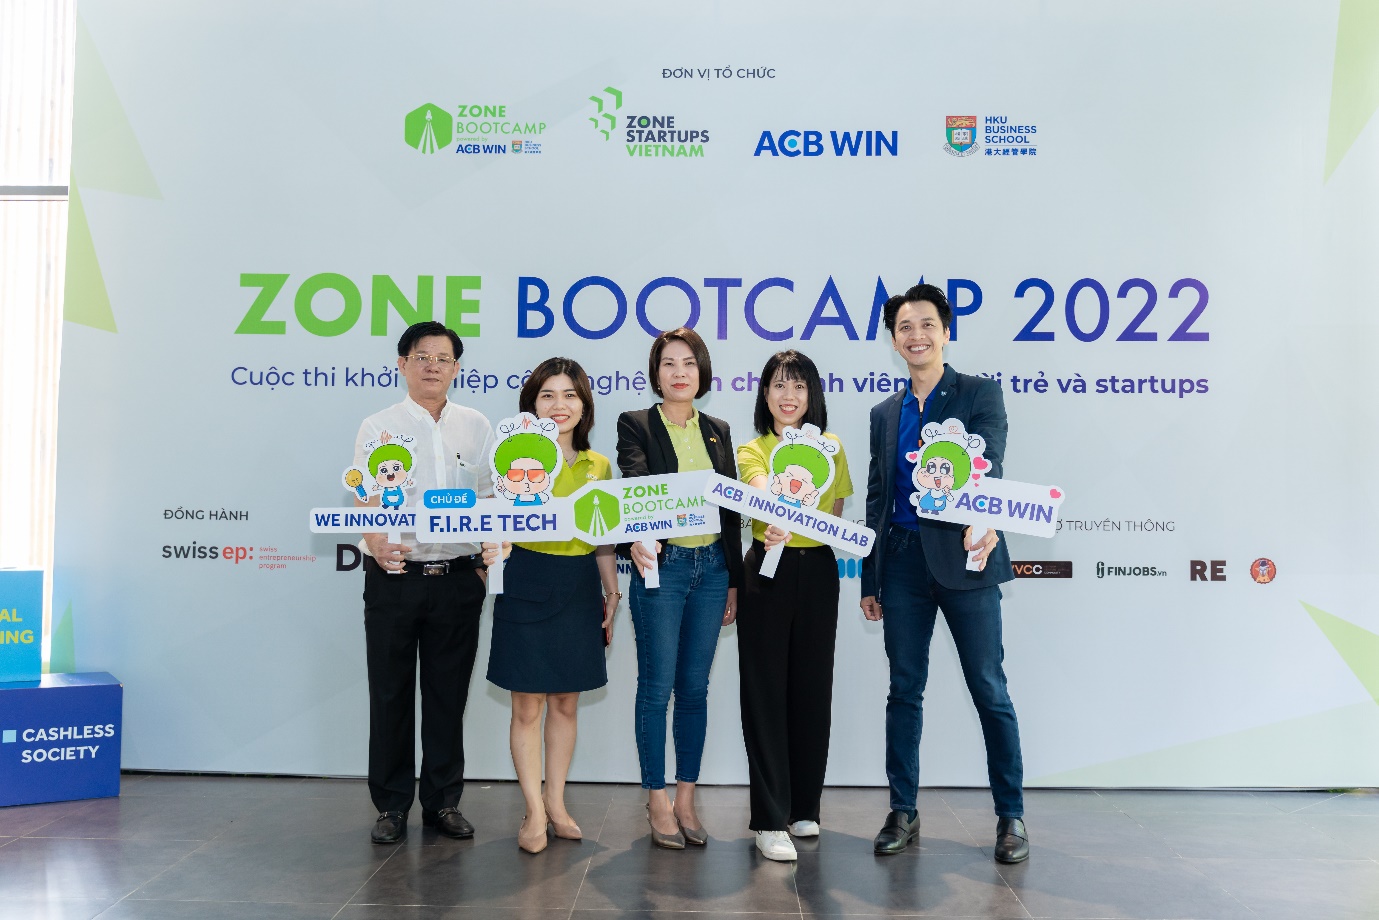 ACB WIN 2022 bùng nổ với cuộc thi khởi nghiệp công nghệ “Zone Bootcamp: F.I.R.E Tech” - Ảnh 2.